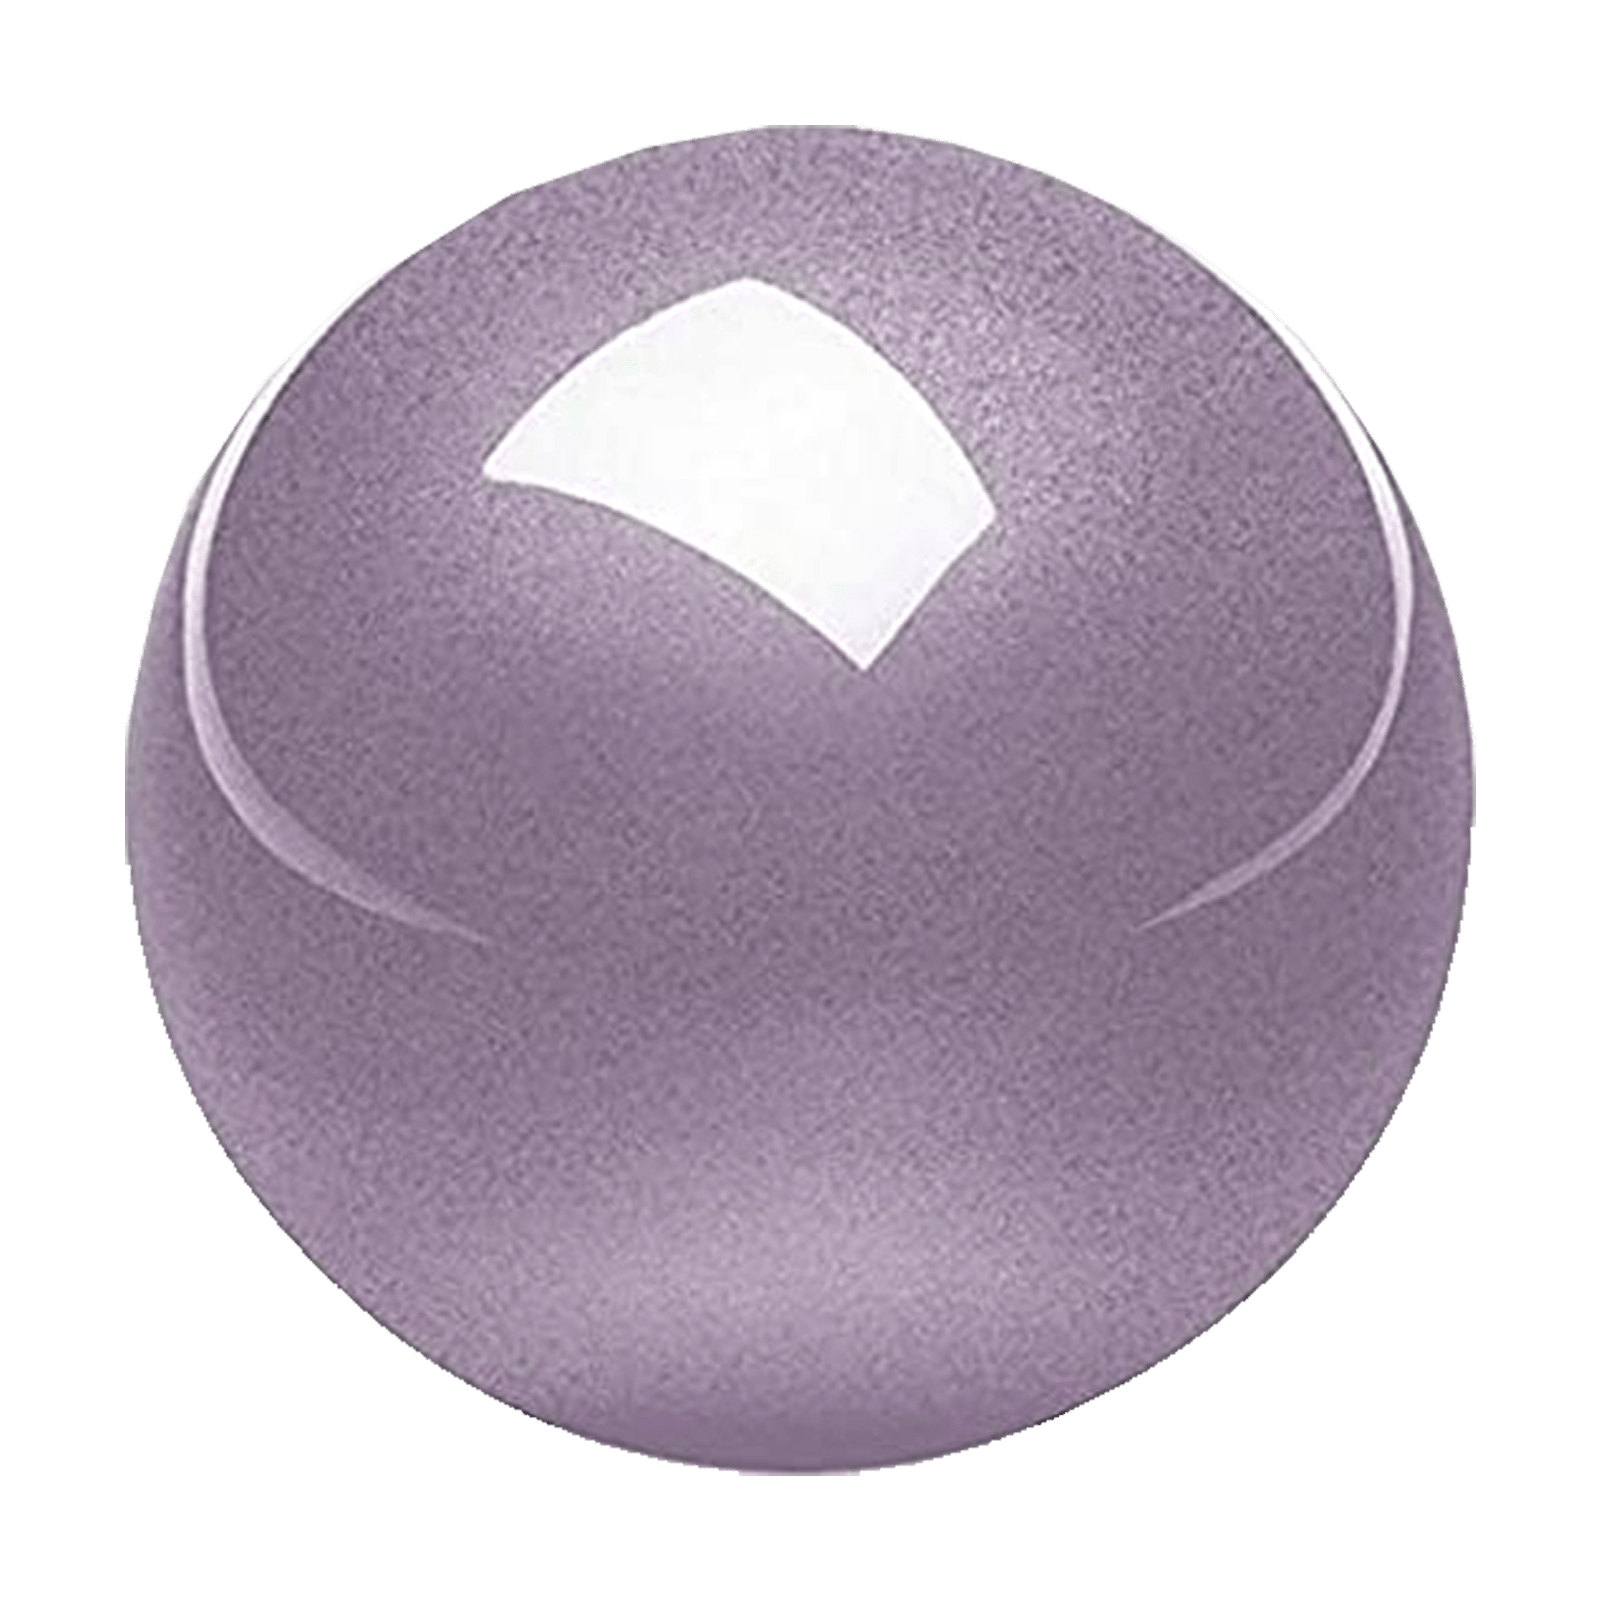 PERIPRO-303 GLV- Glossy Lavender 34mm Trackball - Perixx Europe